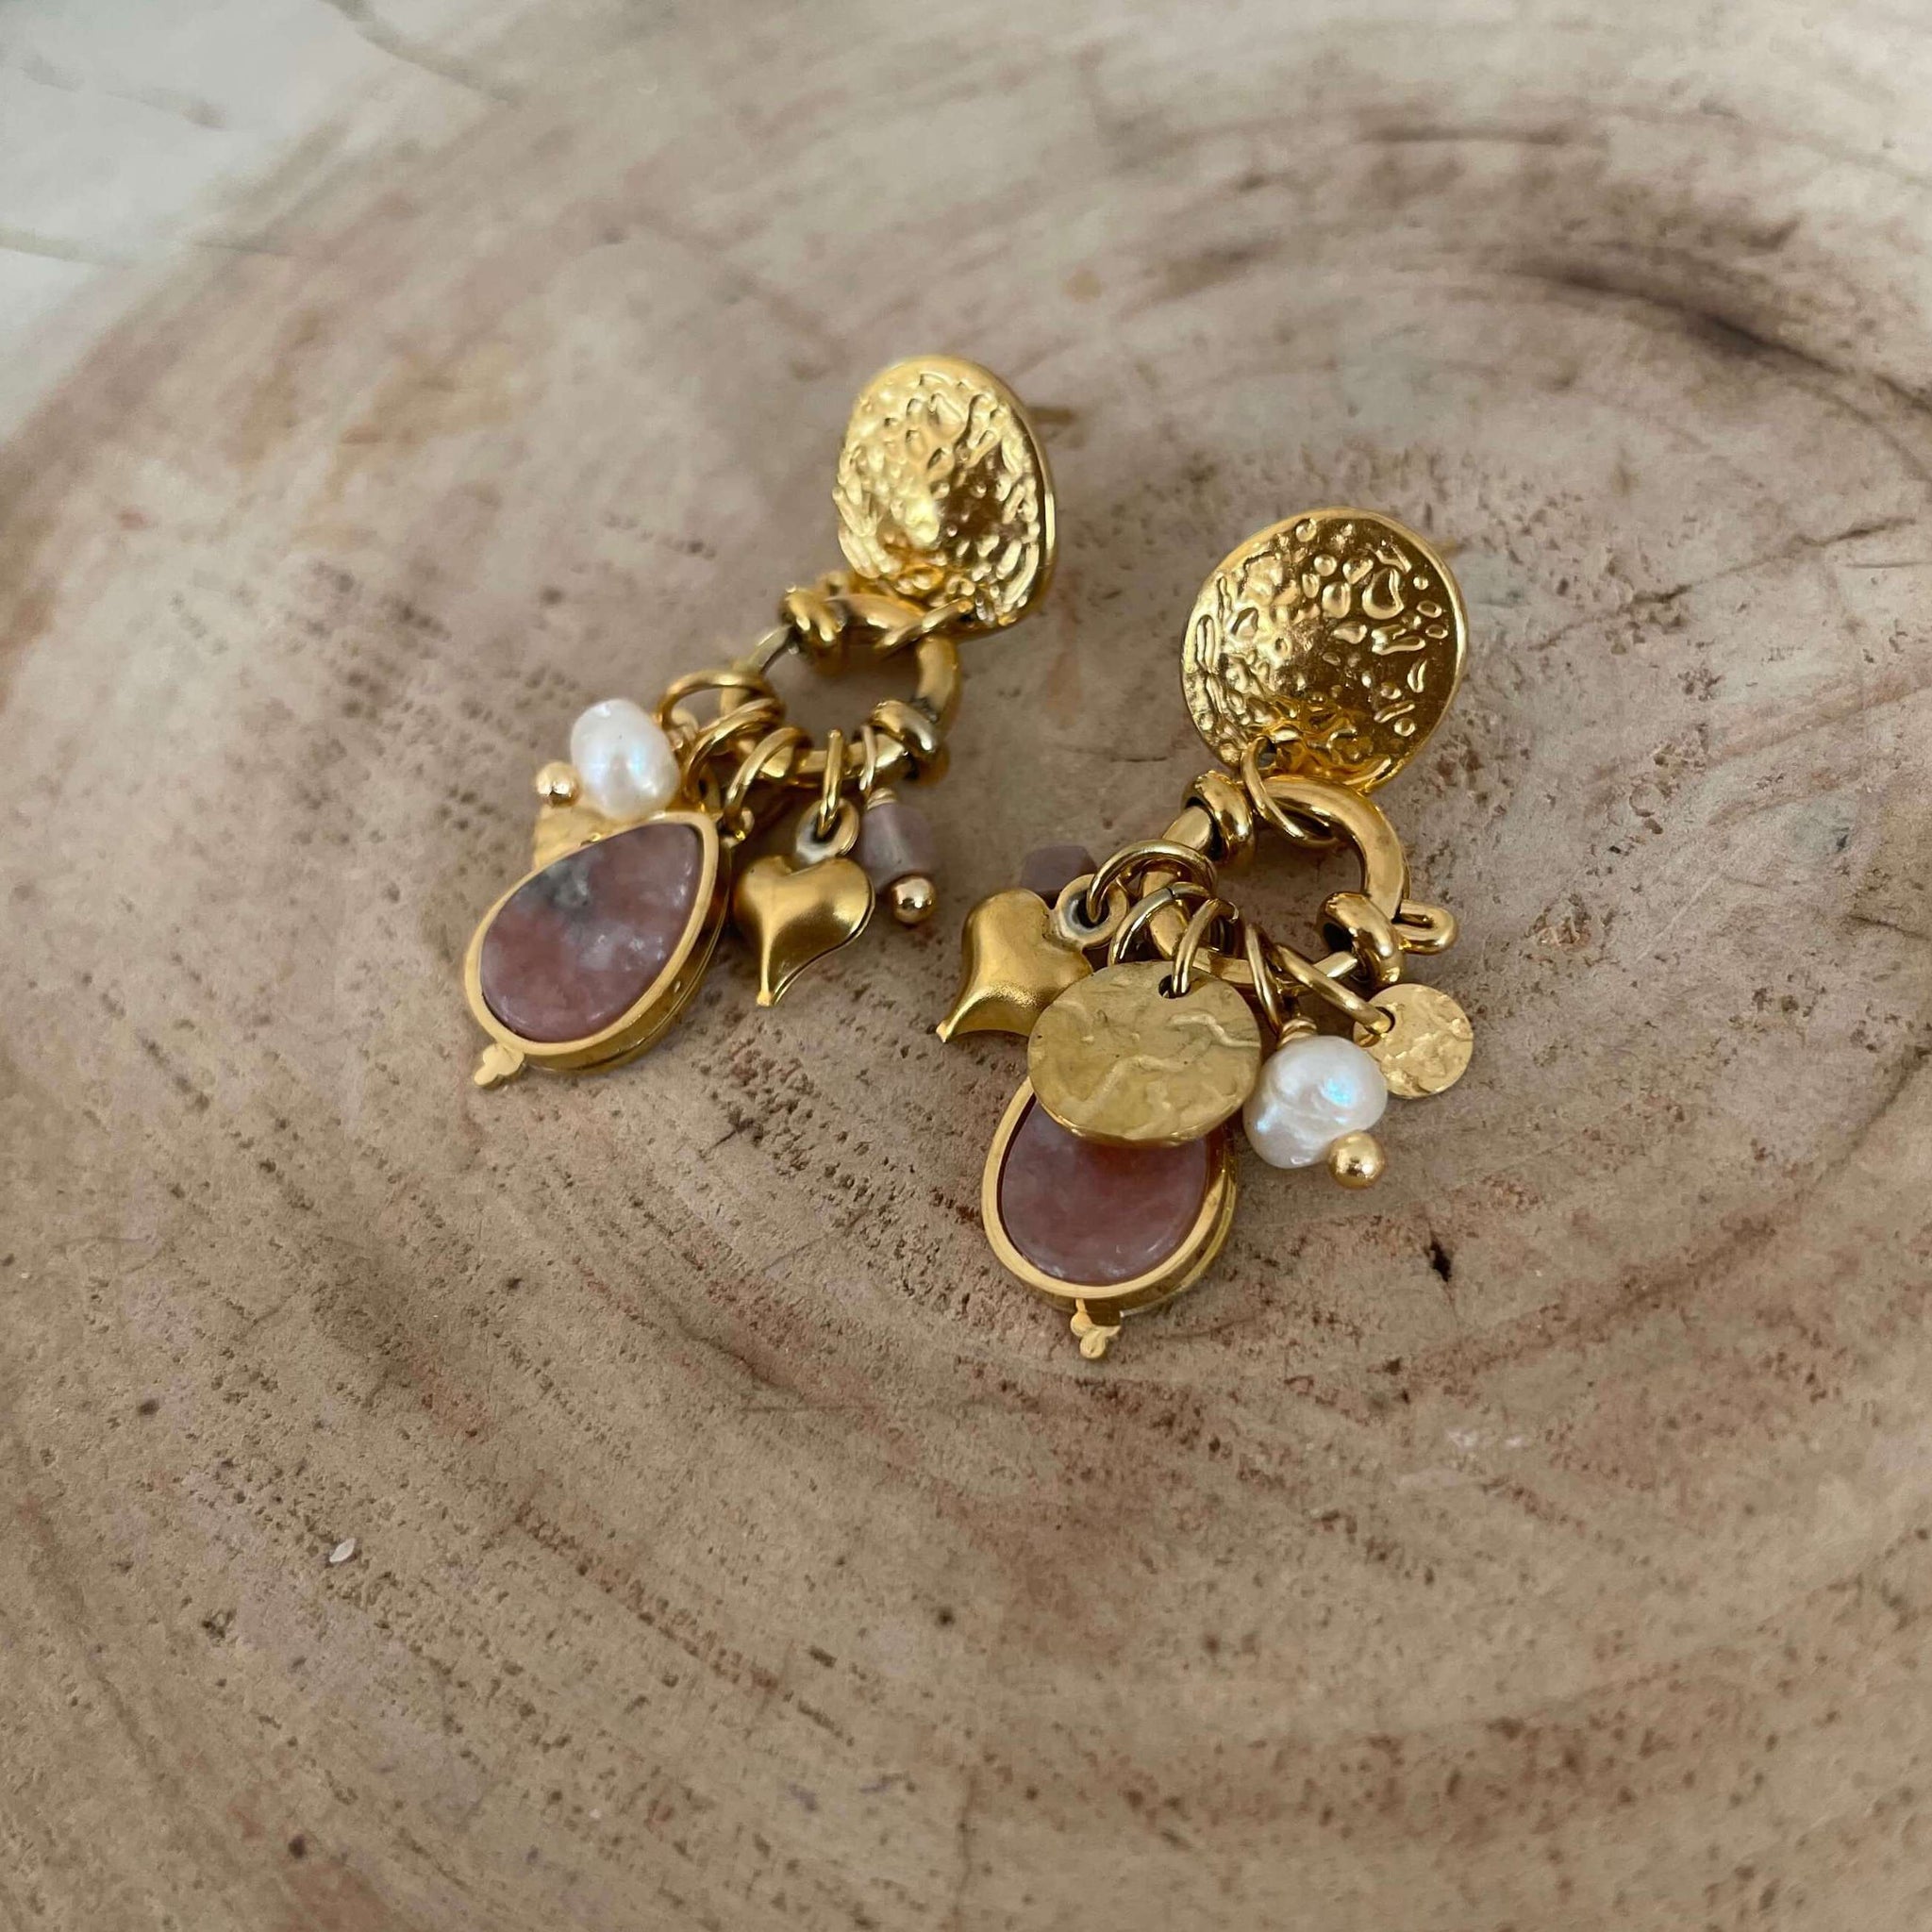 Violet earrings